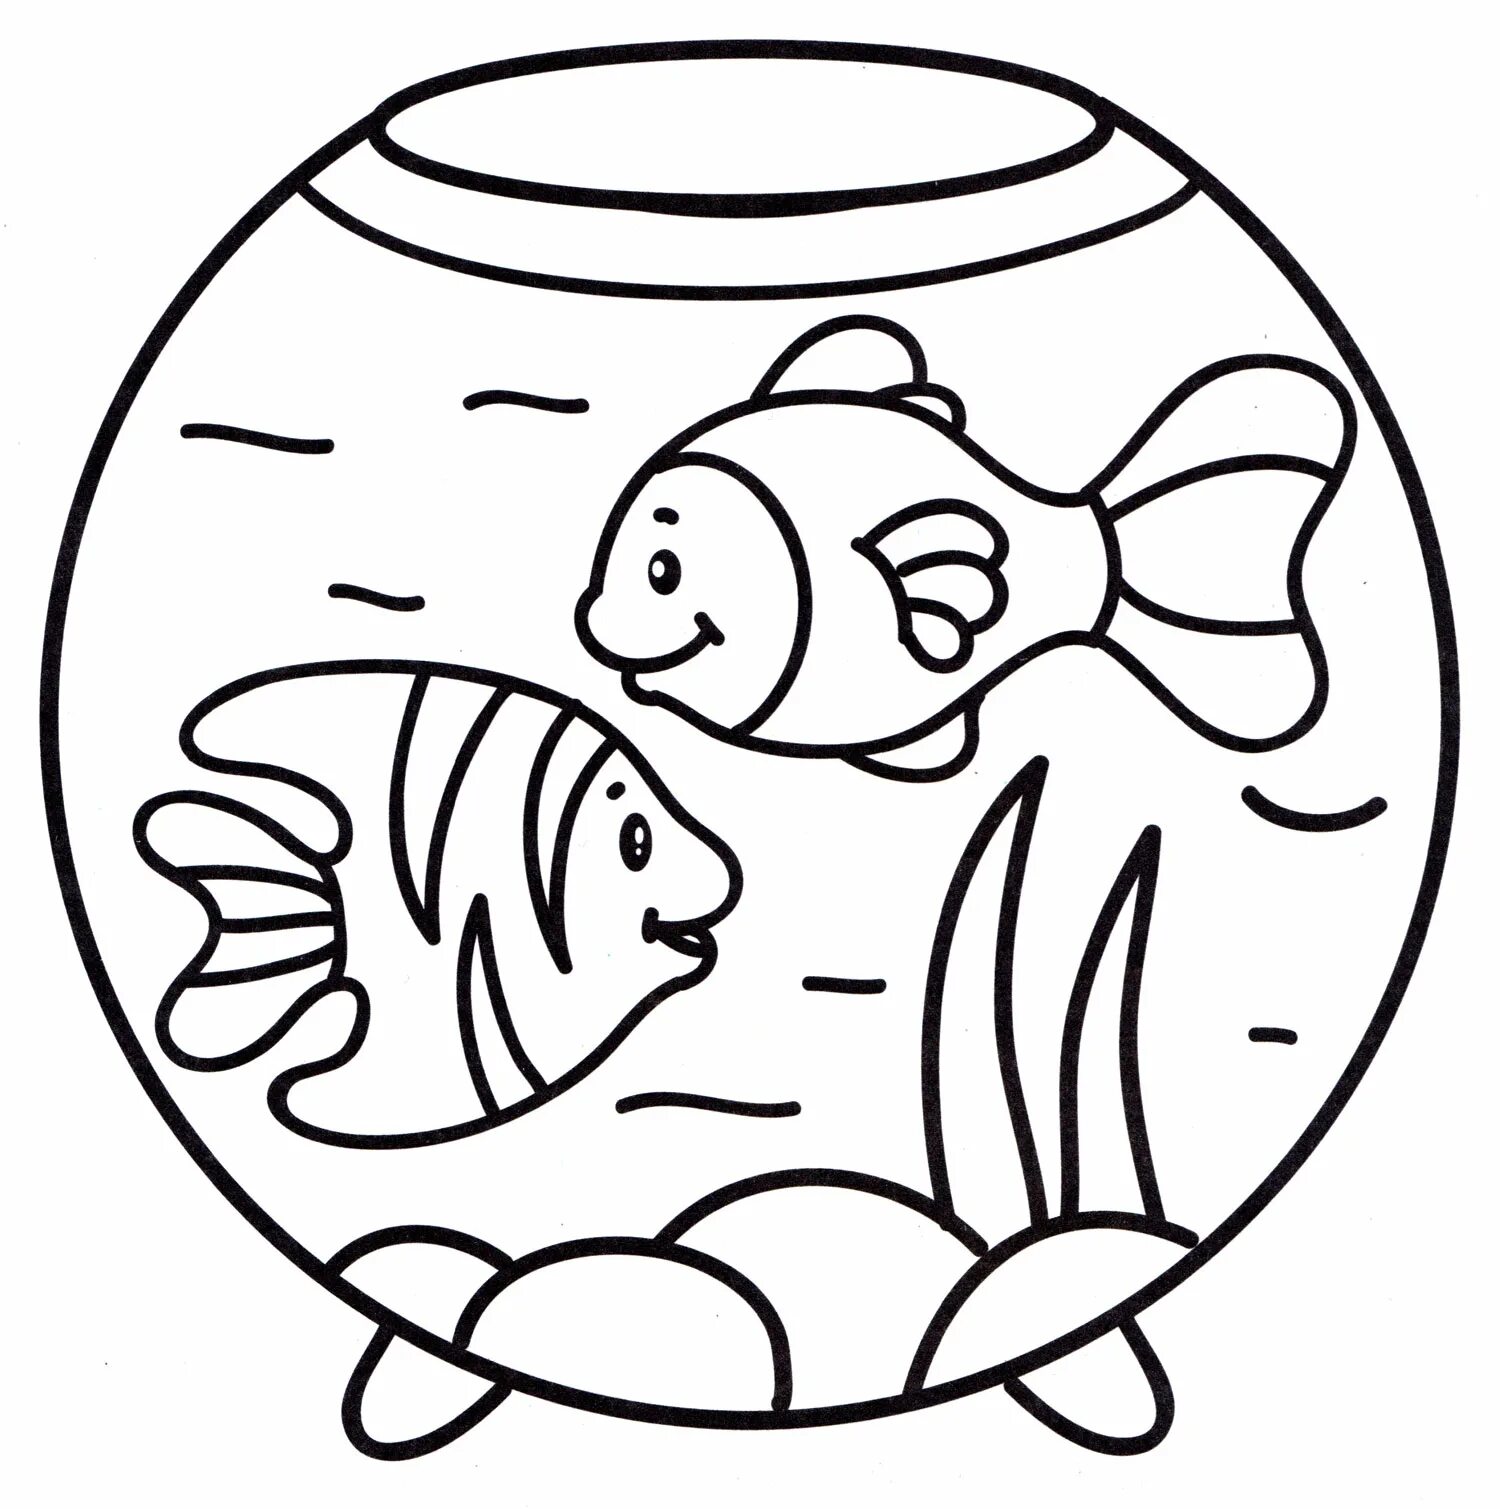 Раскраска аквариум с рыбками. Аквариум раскраска для детей. Аквариумные рыбки раскраска. Аквариумные рыбки раскраска для детей.